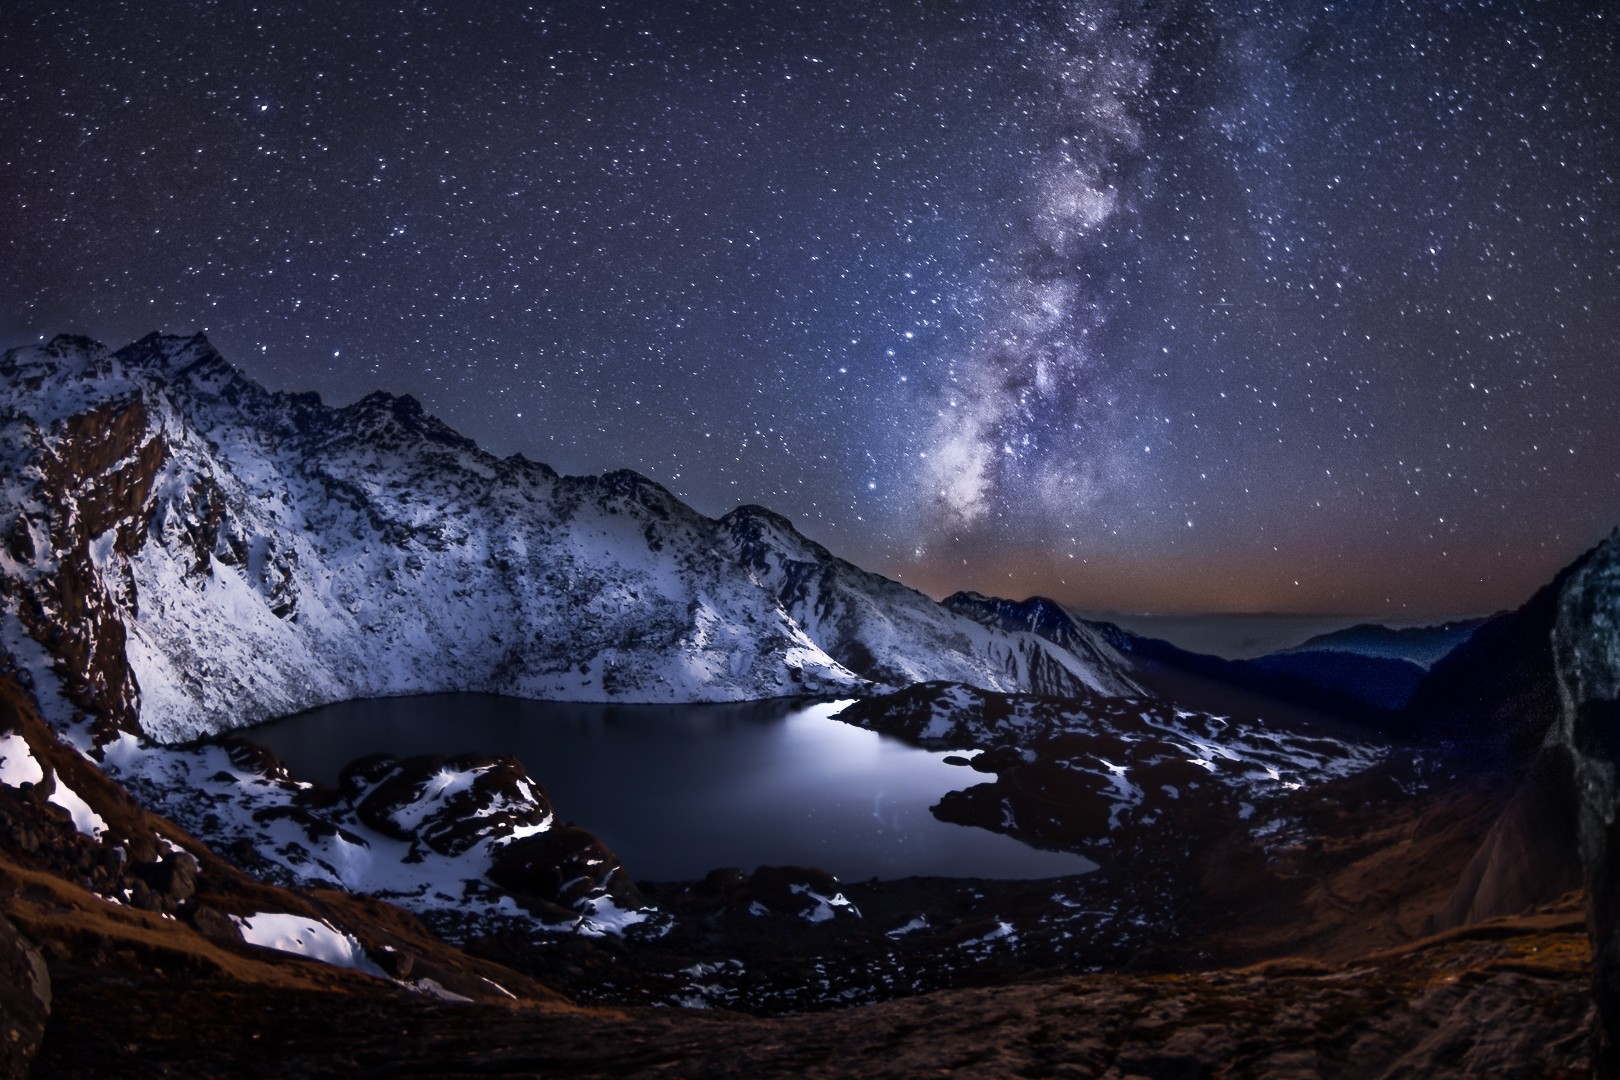 Млечный Путь и высокогорное озеро Госайкунда в Гималаях. Автор Евгений Самученко